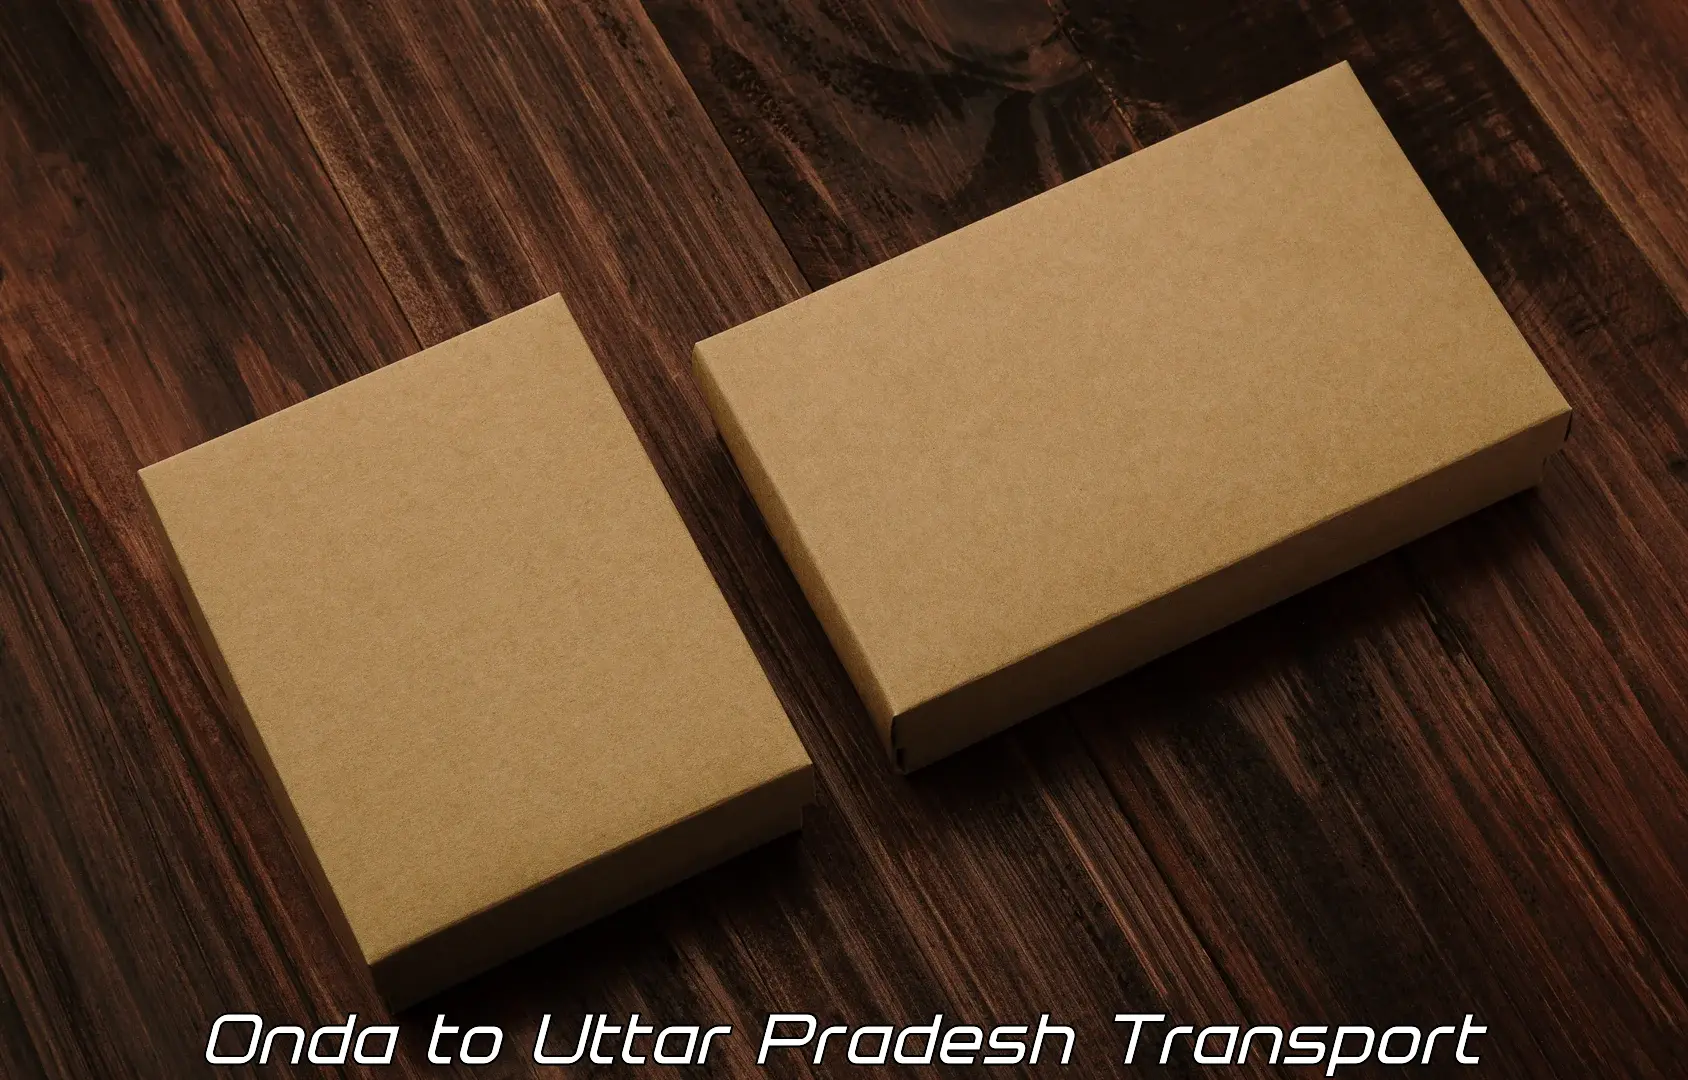 Sending bike to another city Onda to Uttar Pradesh